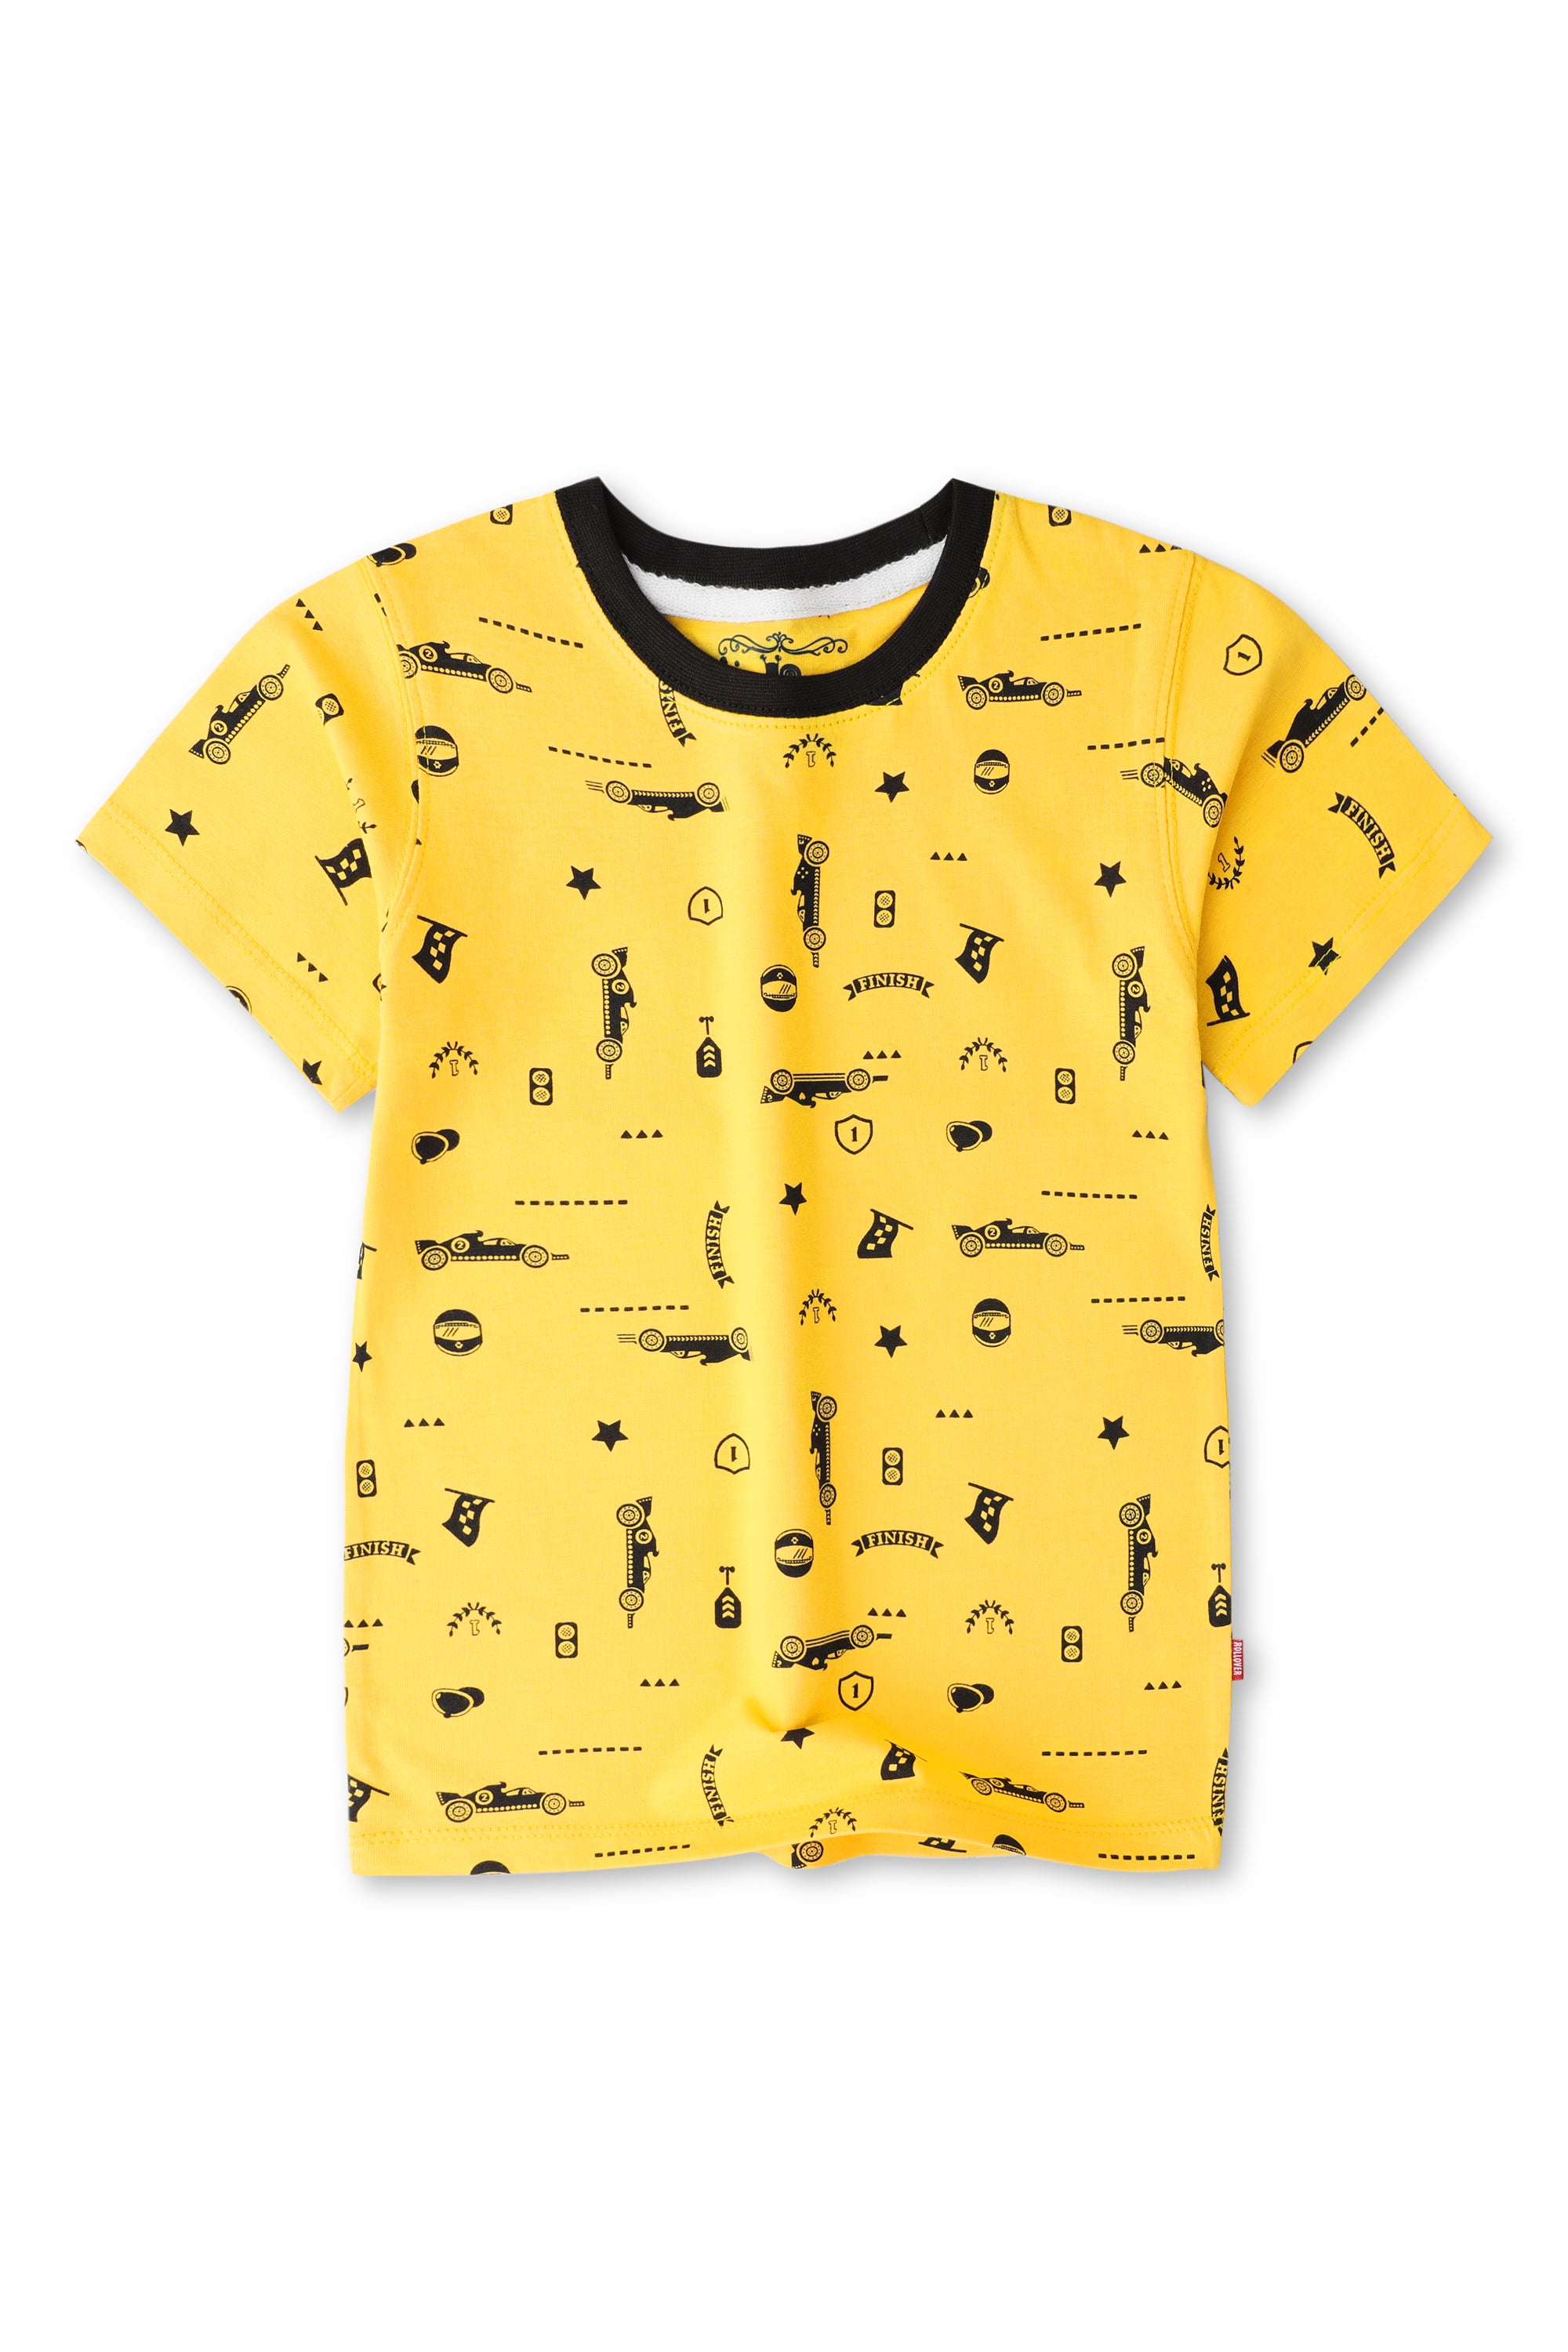 Boys Yellow Racing Car T-shirt